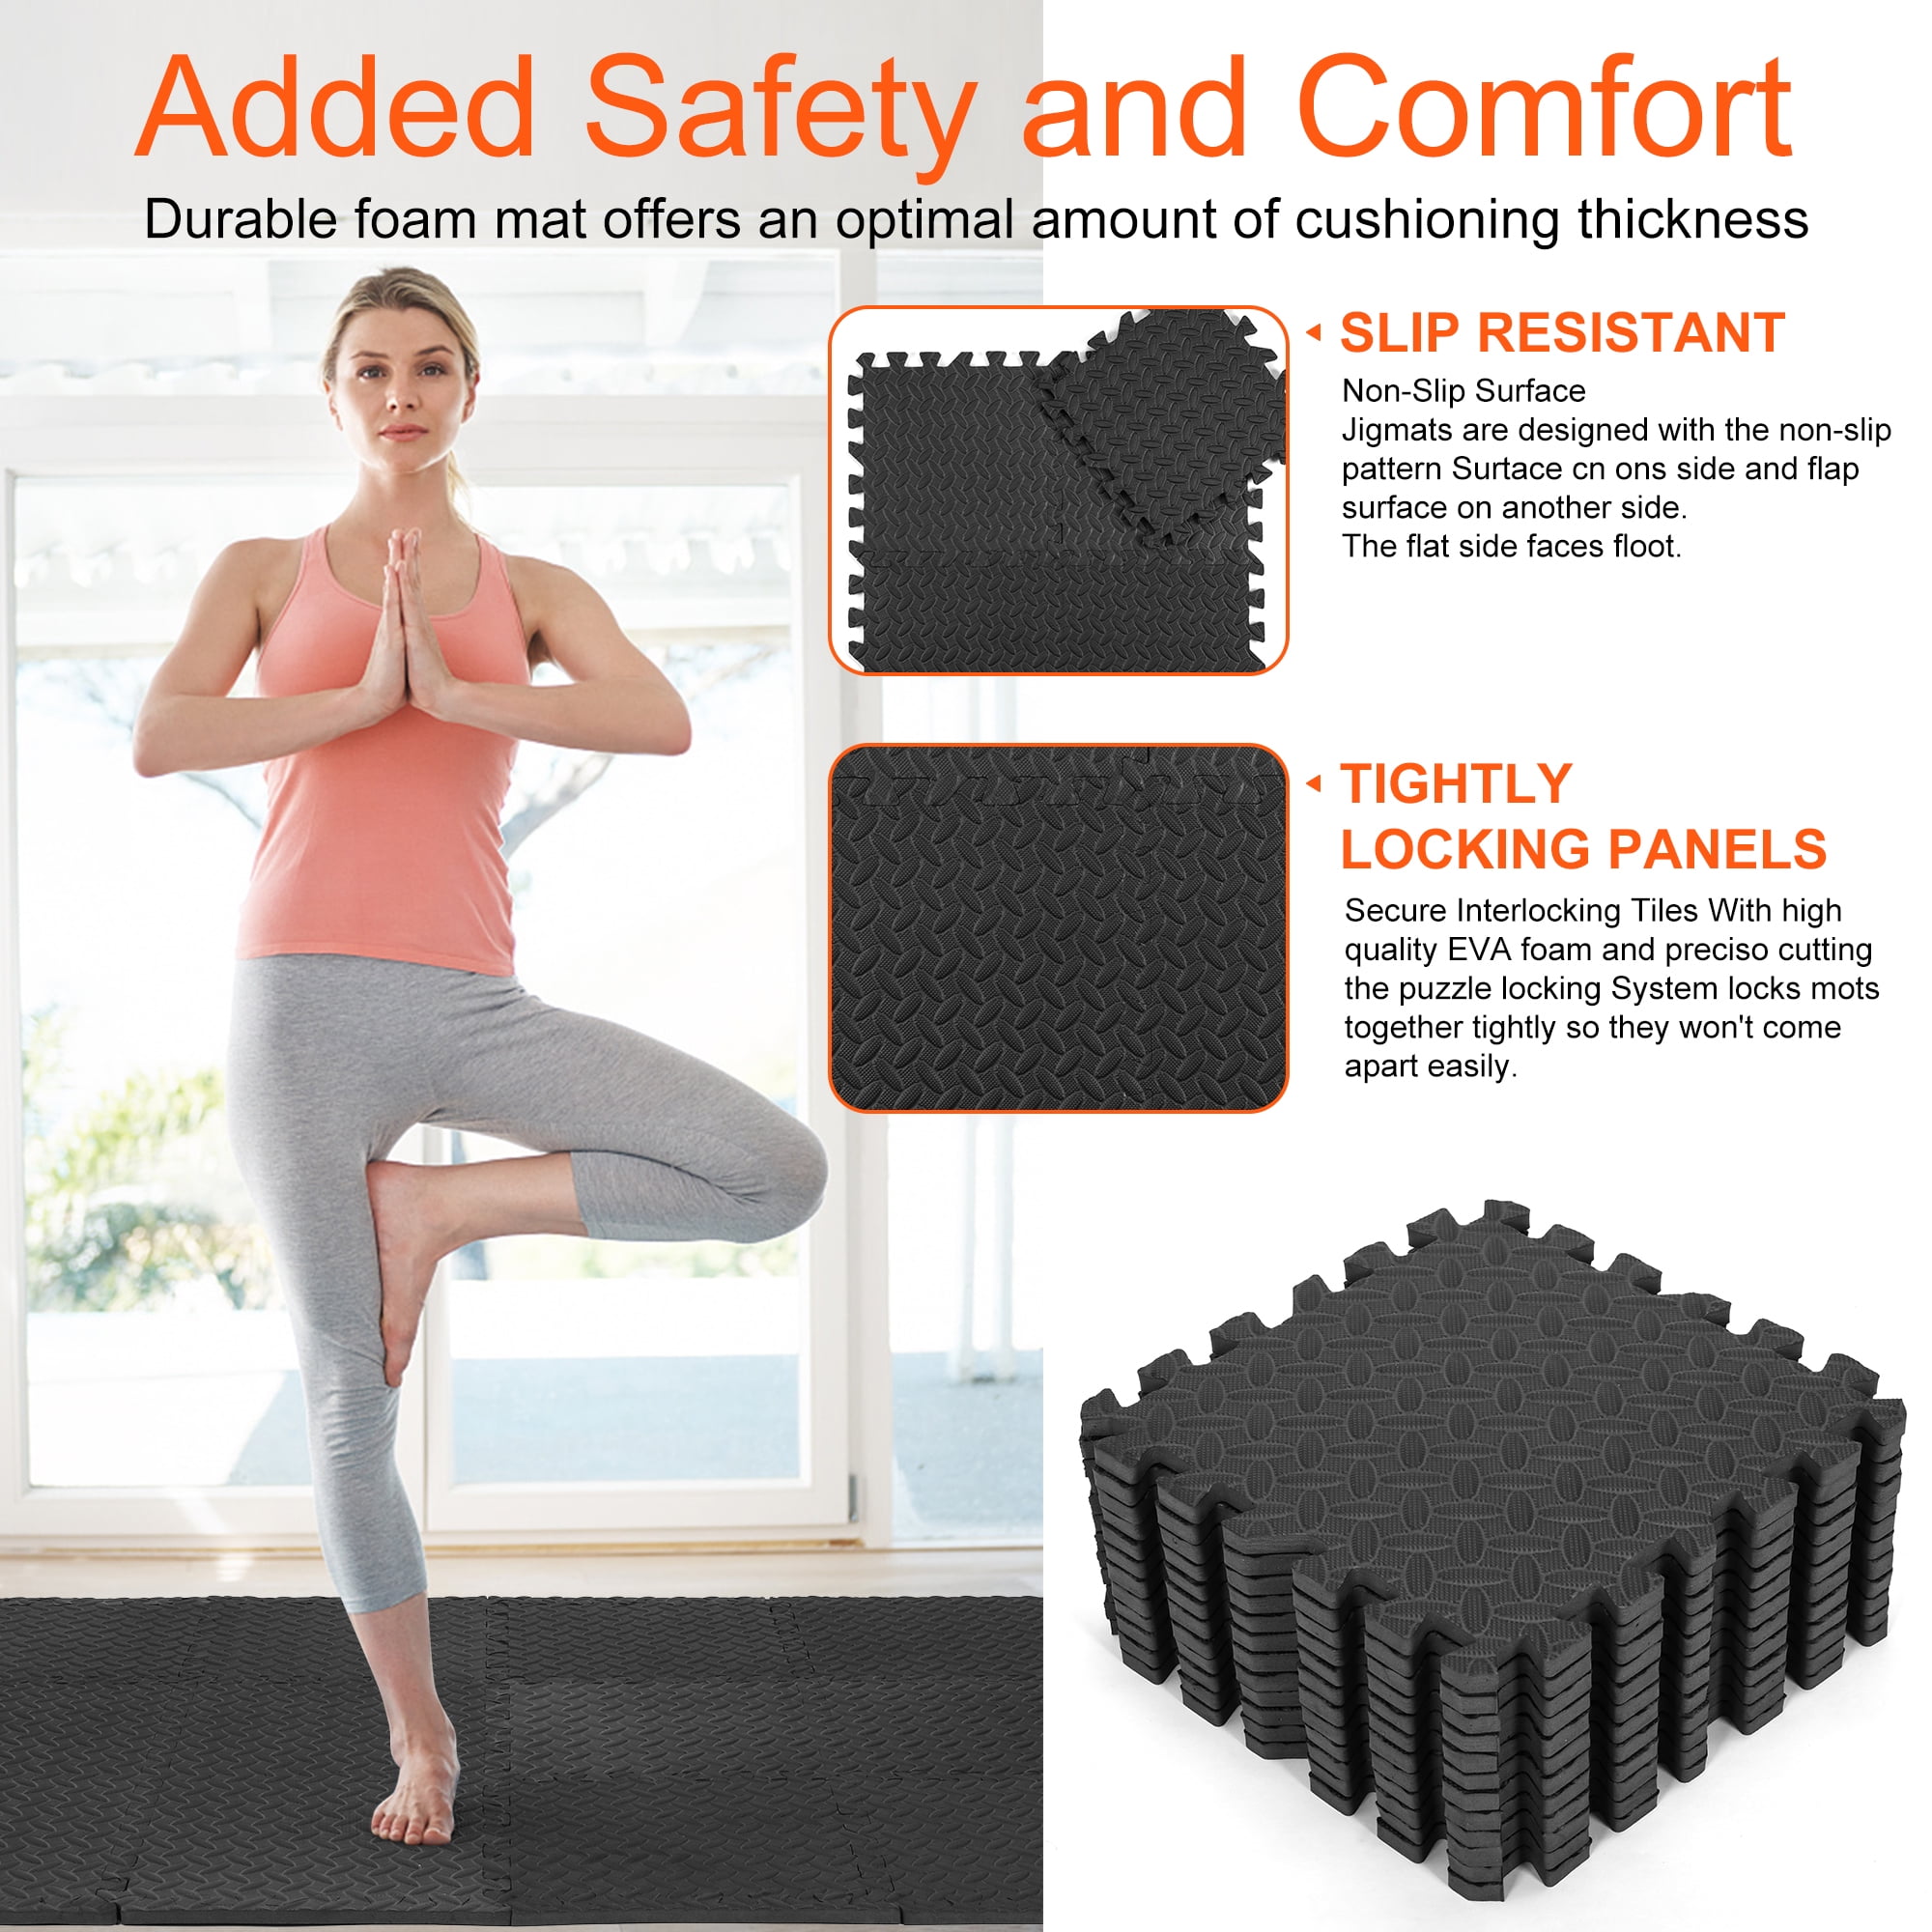 Hmount Deeroll 12pcs Interlocking Foam Floor Mat Suitable for Gym Outdoor/Indoor Protective Flooring Matting, Black, Size: 30